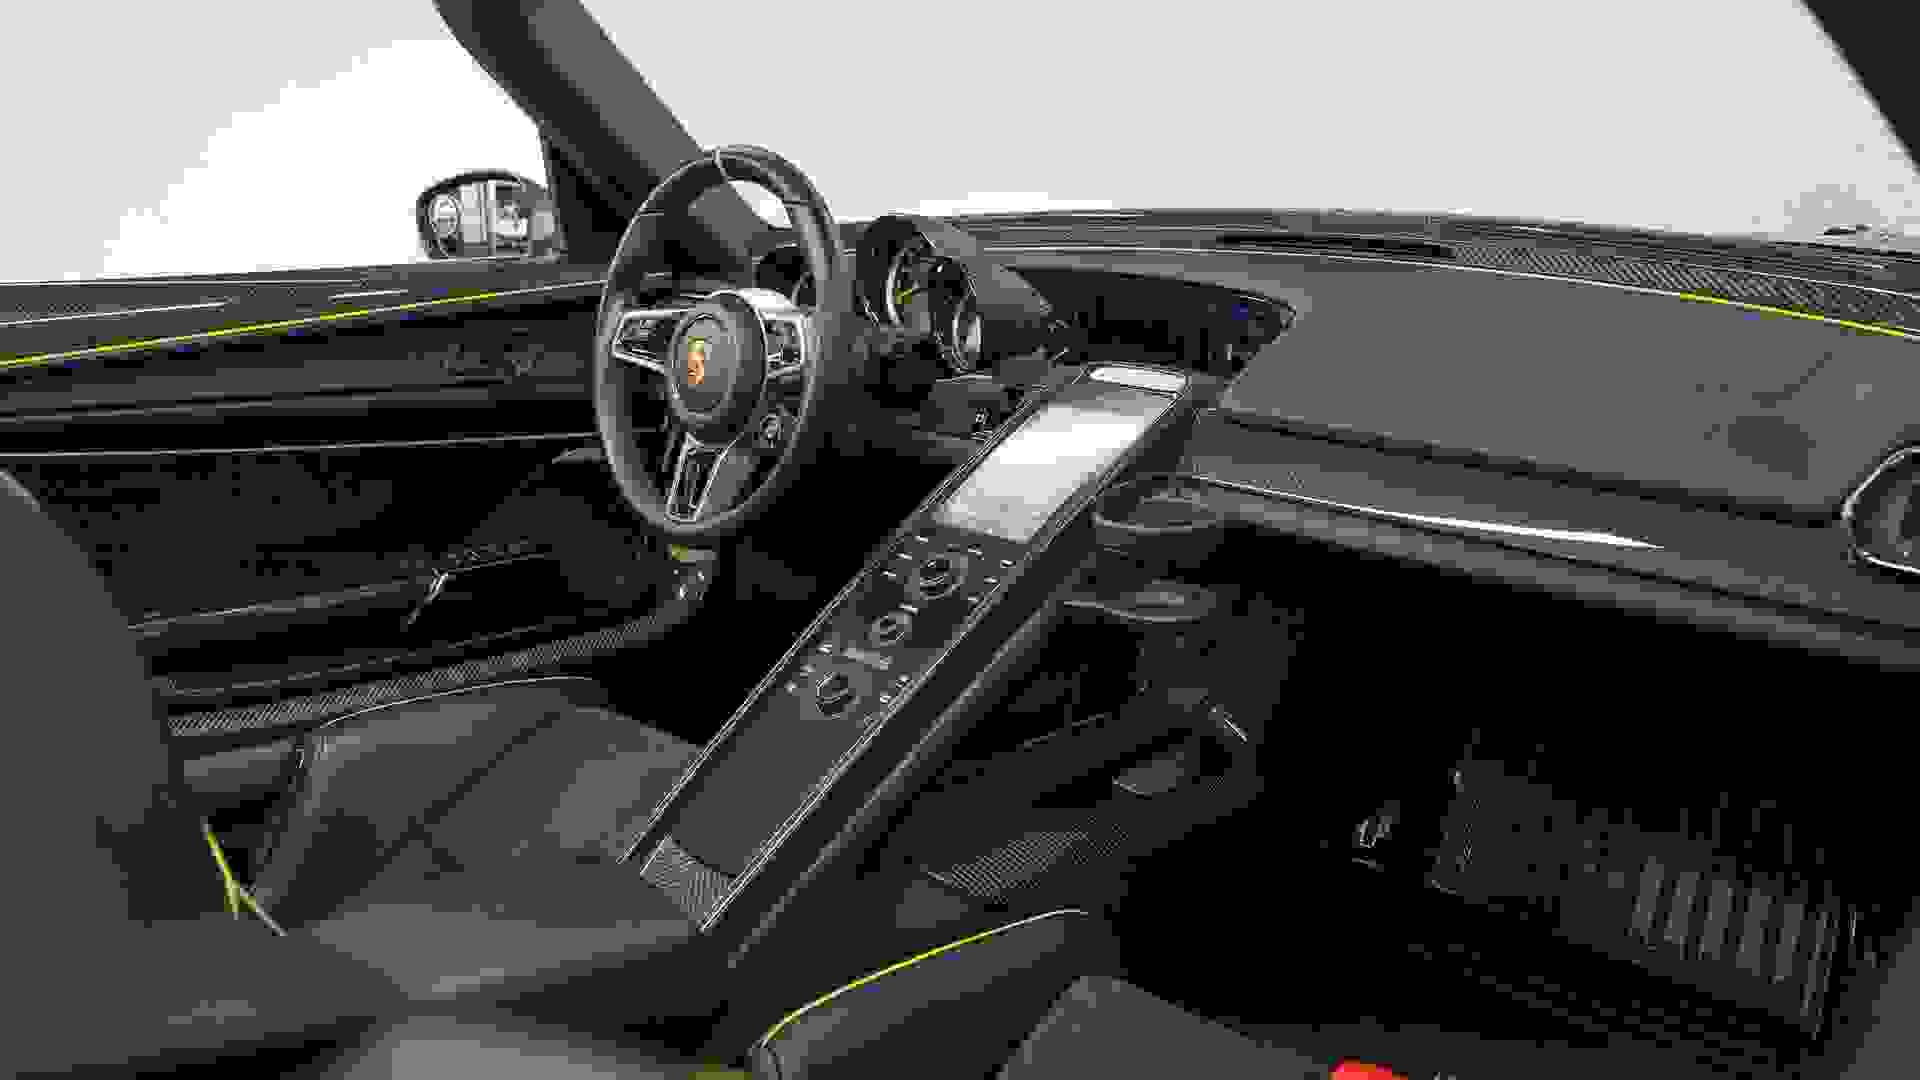 Porsche 918 Spyder Photo e1cfa296-6ef6-48a7-9649-575beba30c70.jpg